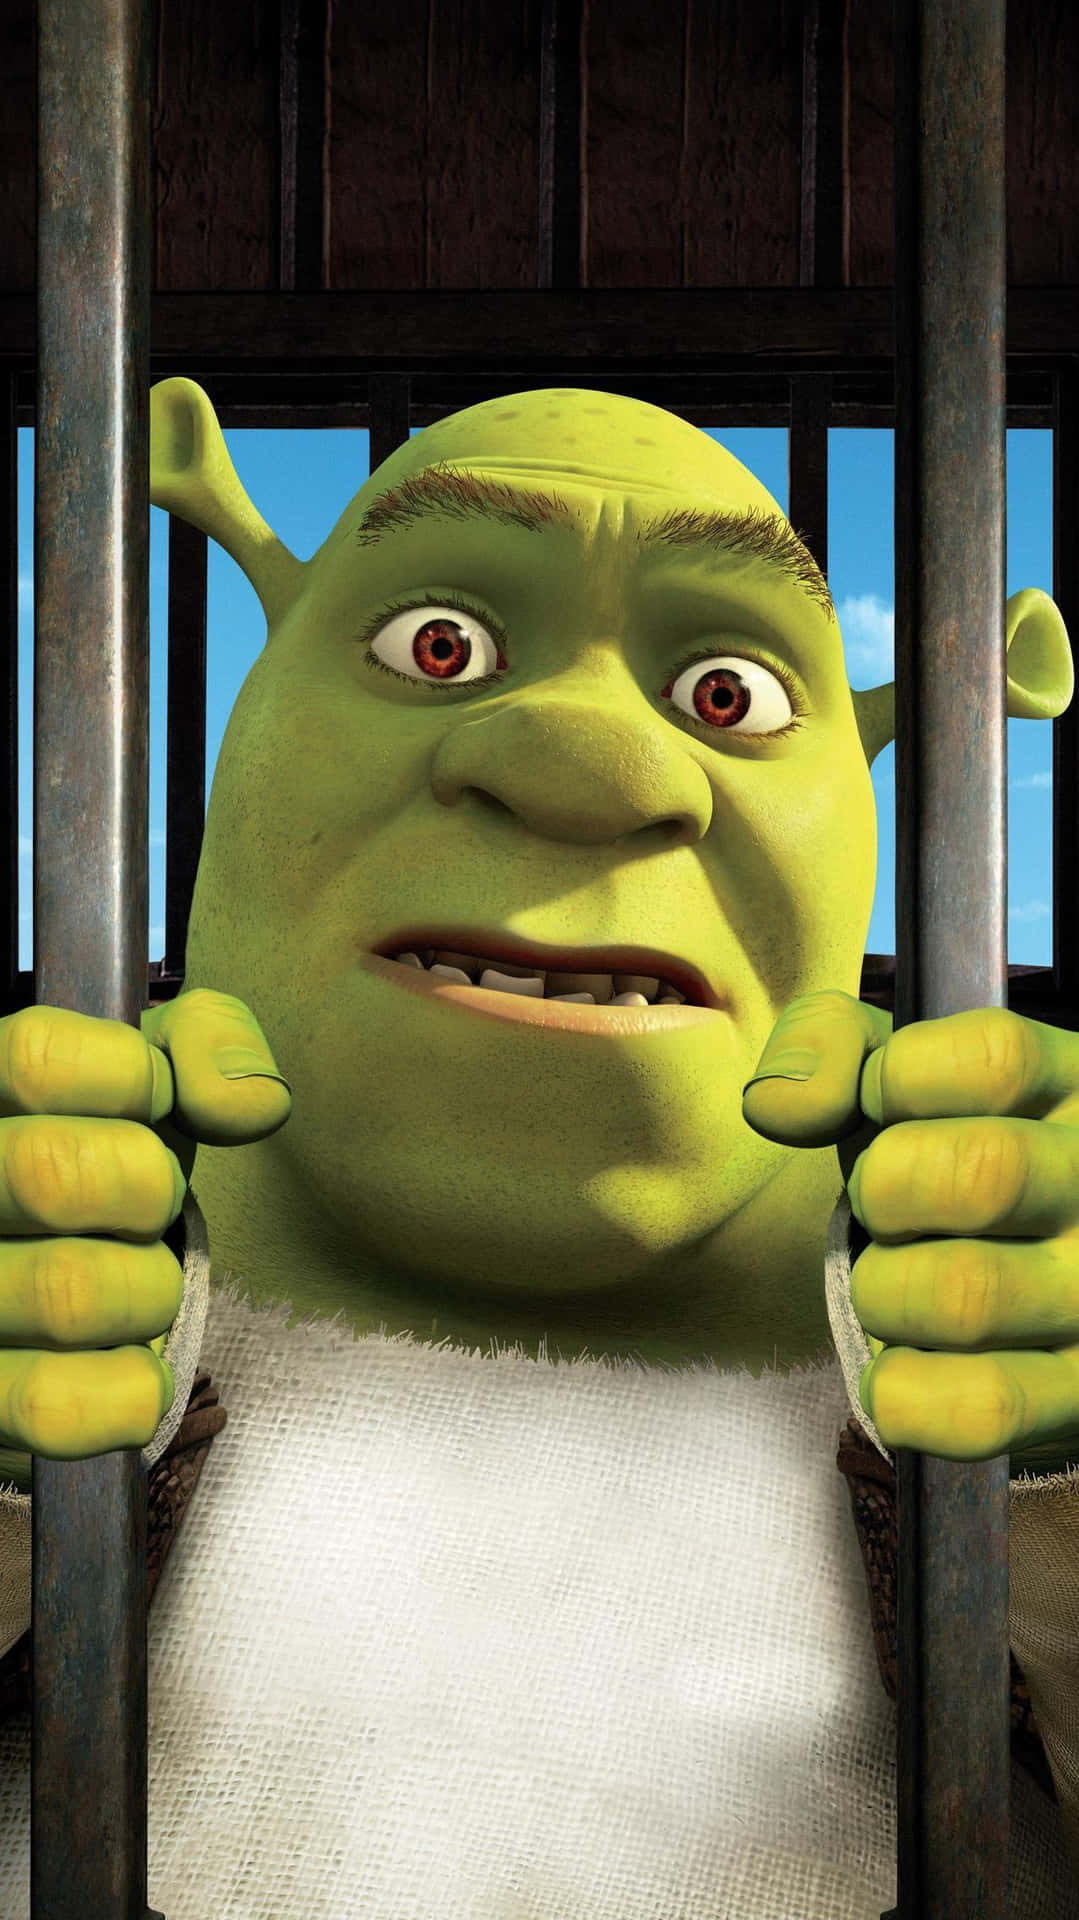 Dettesjove Billede Af Shrek, Der Prøver At Gemme Sig For Sine Børn, Vil Få Dig Til At Grine!